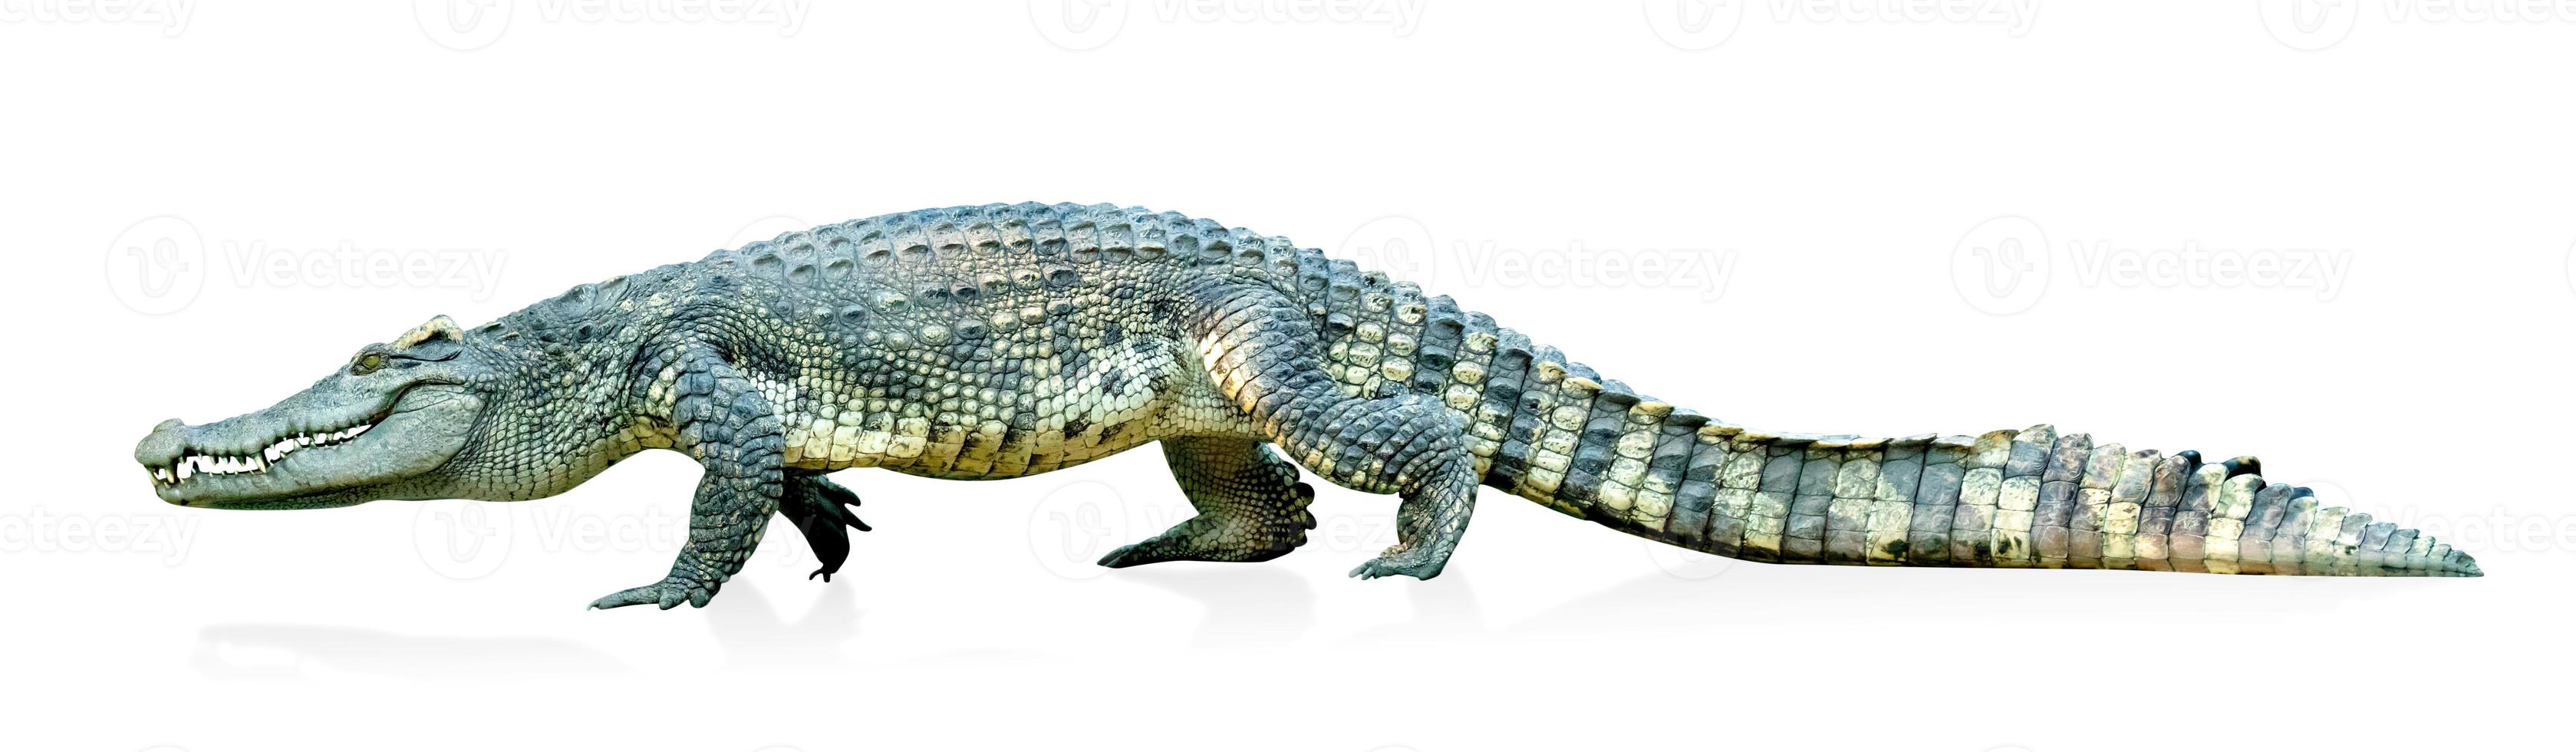 crocodilo isolado no fundo branco, inclui traçado de recorte foto